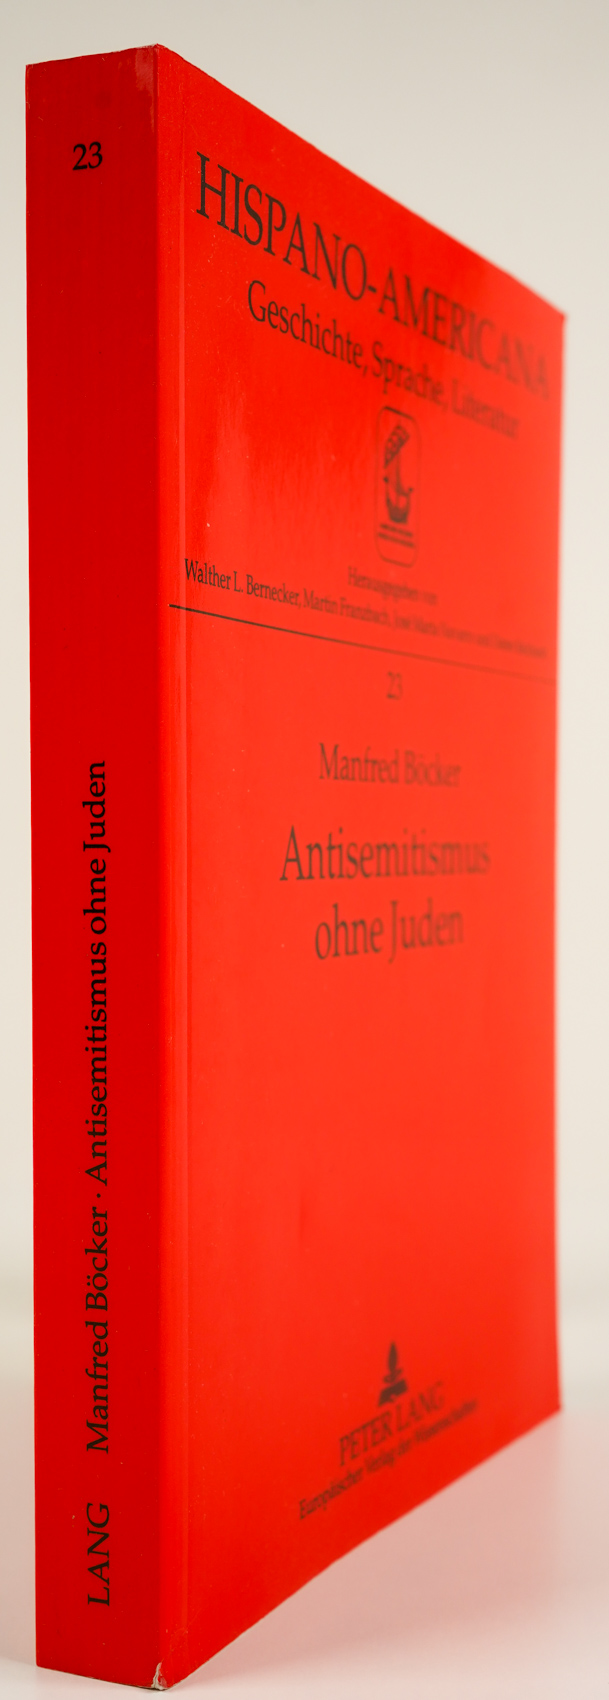 Antisemitismus ohne Juden. Die Zweite Republik, die antirepublikanische Rechte und die Juden. Spanien 1931 bis 1936. - - Böcker, Manfred